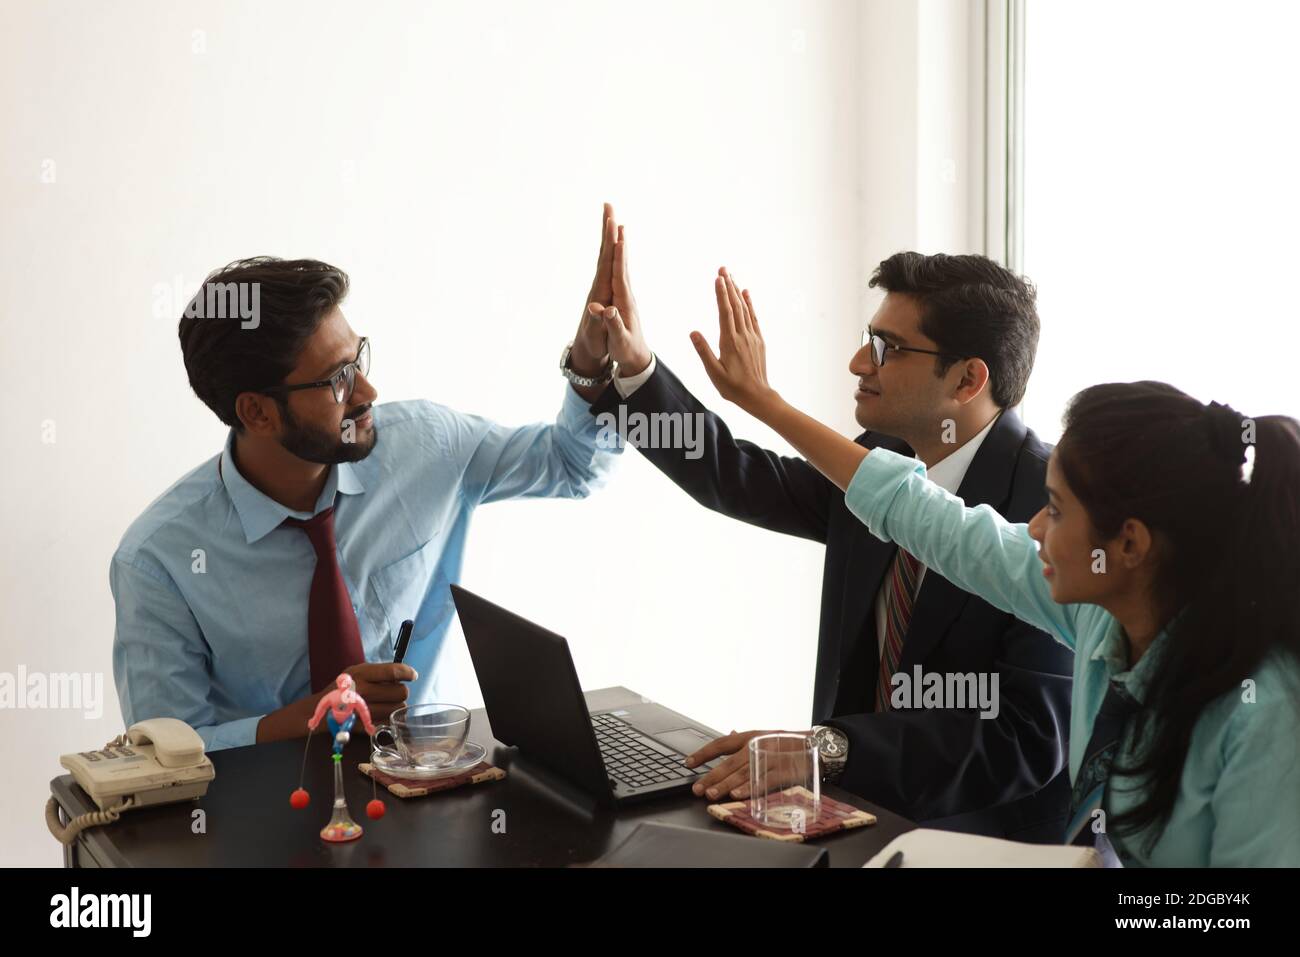 Junge und tatkräftige indische bengalische Unternehmensmitarbeiter feiern Erfolg und Teamarbeit durch Handgesten. Indisches Unternehmen Stockfoto